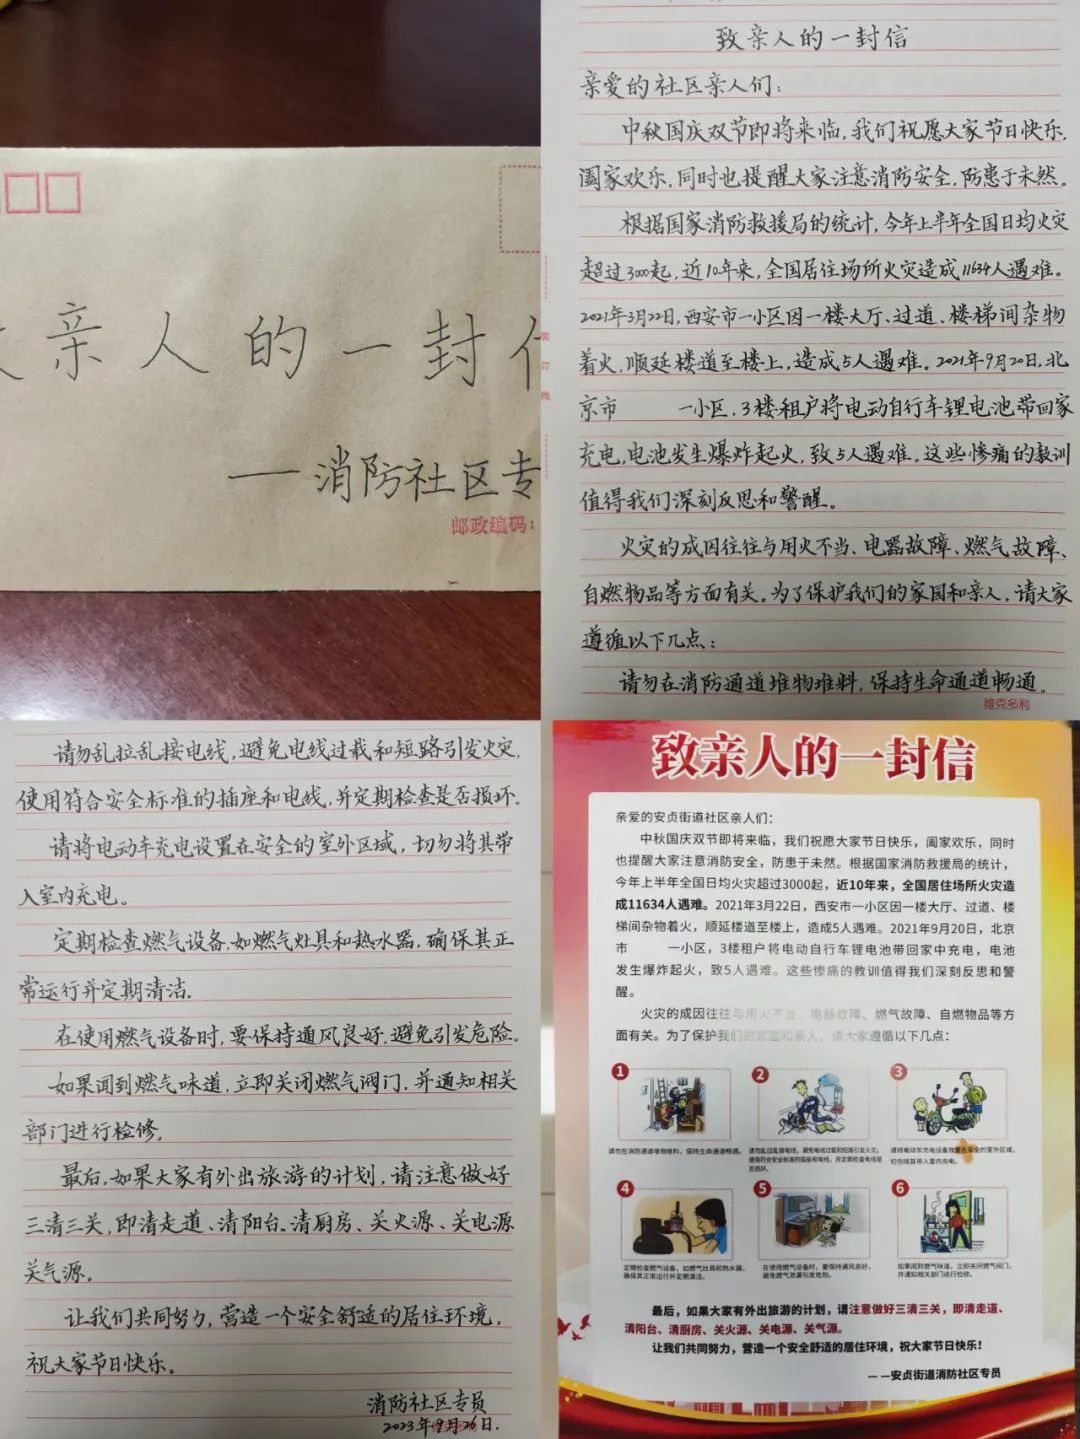 消防專員賈雲印製的1000餘份「致親人的一封信」。  圖源：朝陽區消防救援支隊